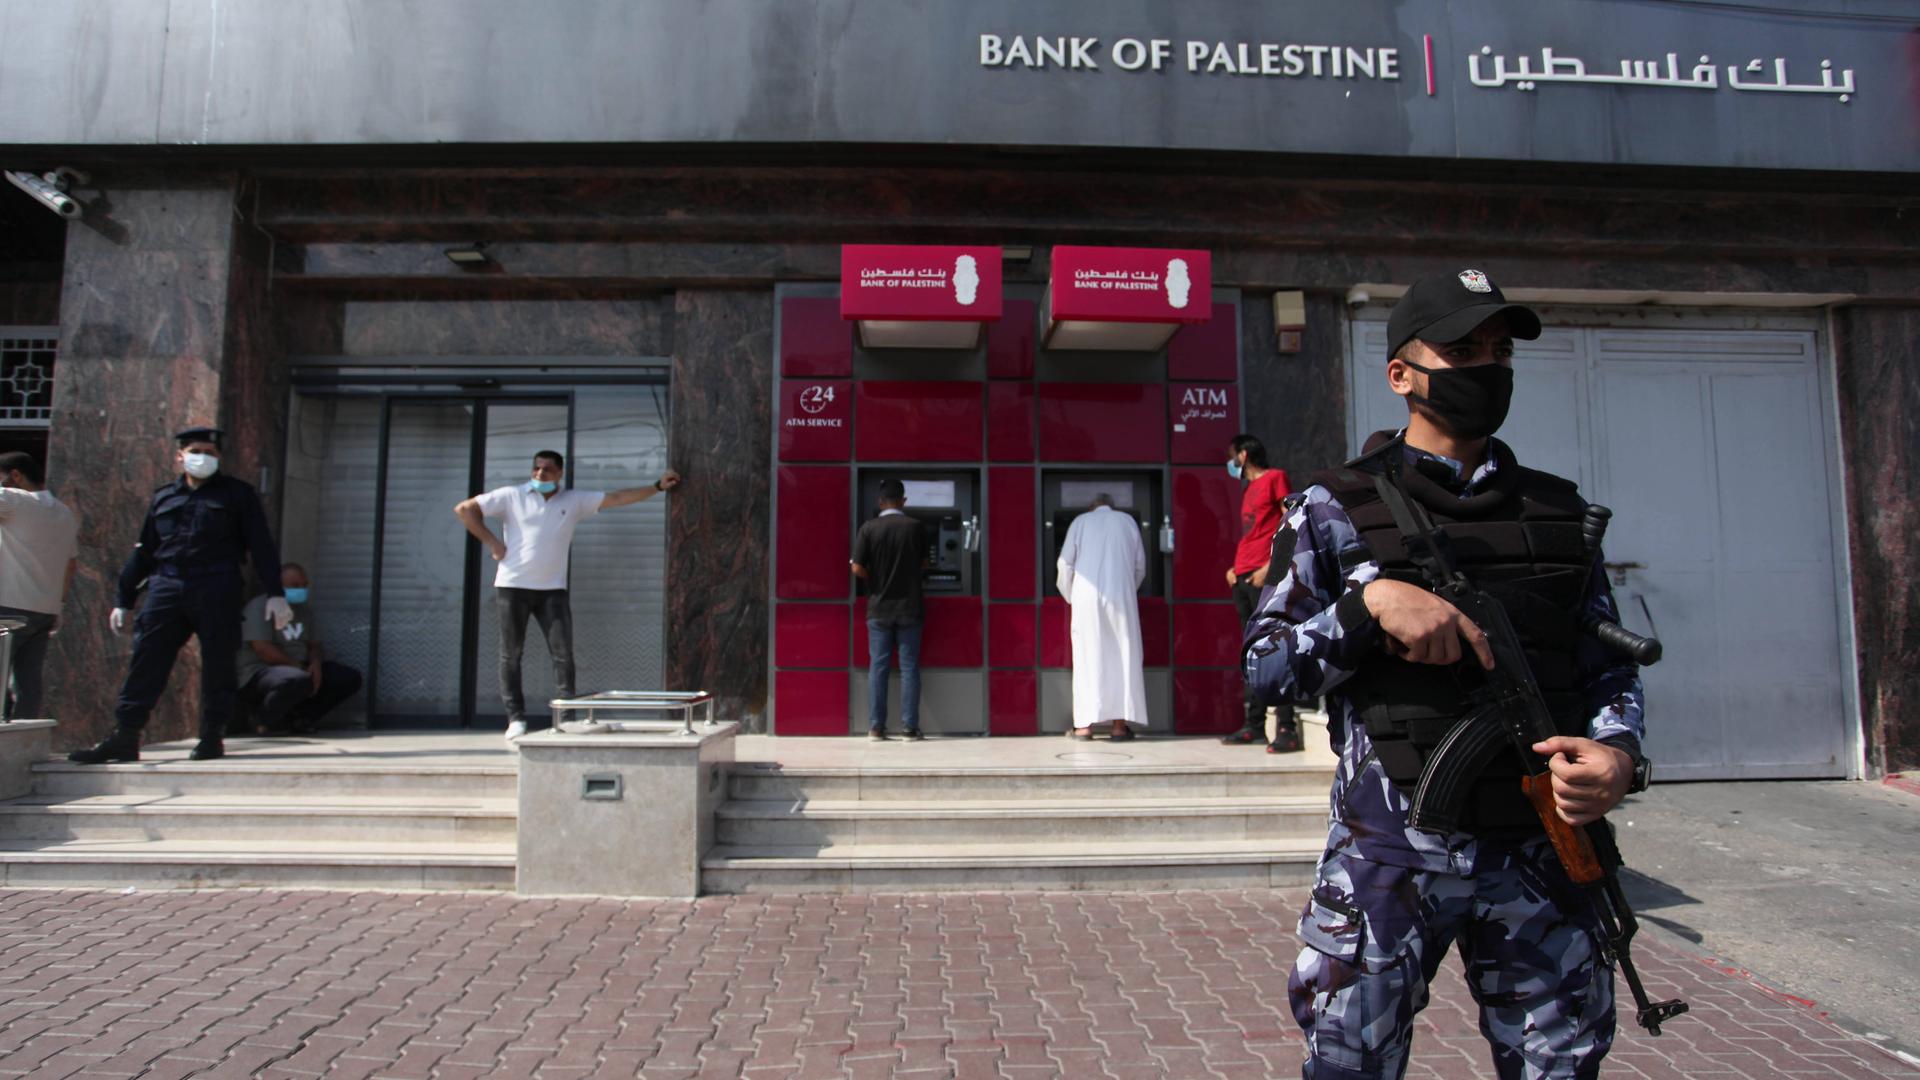 Das Foto zeigt eine Filiale der Bank of Palestine in der Stadt Gaza. Vor dem Gebäude steht Wachpersonal mit einem Maschinengewehr. 